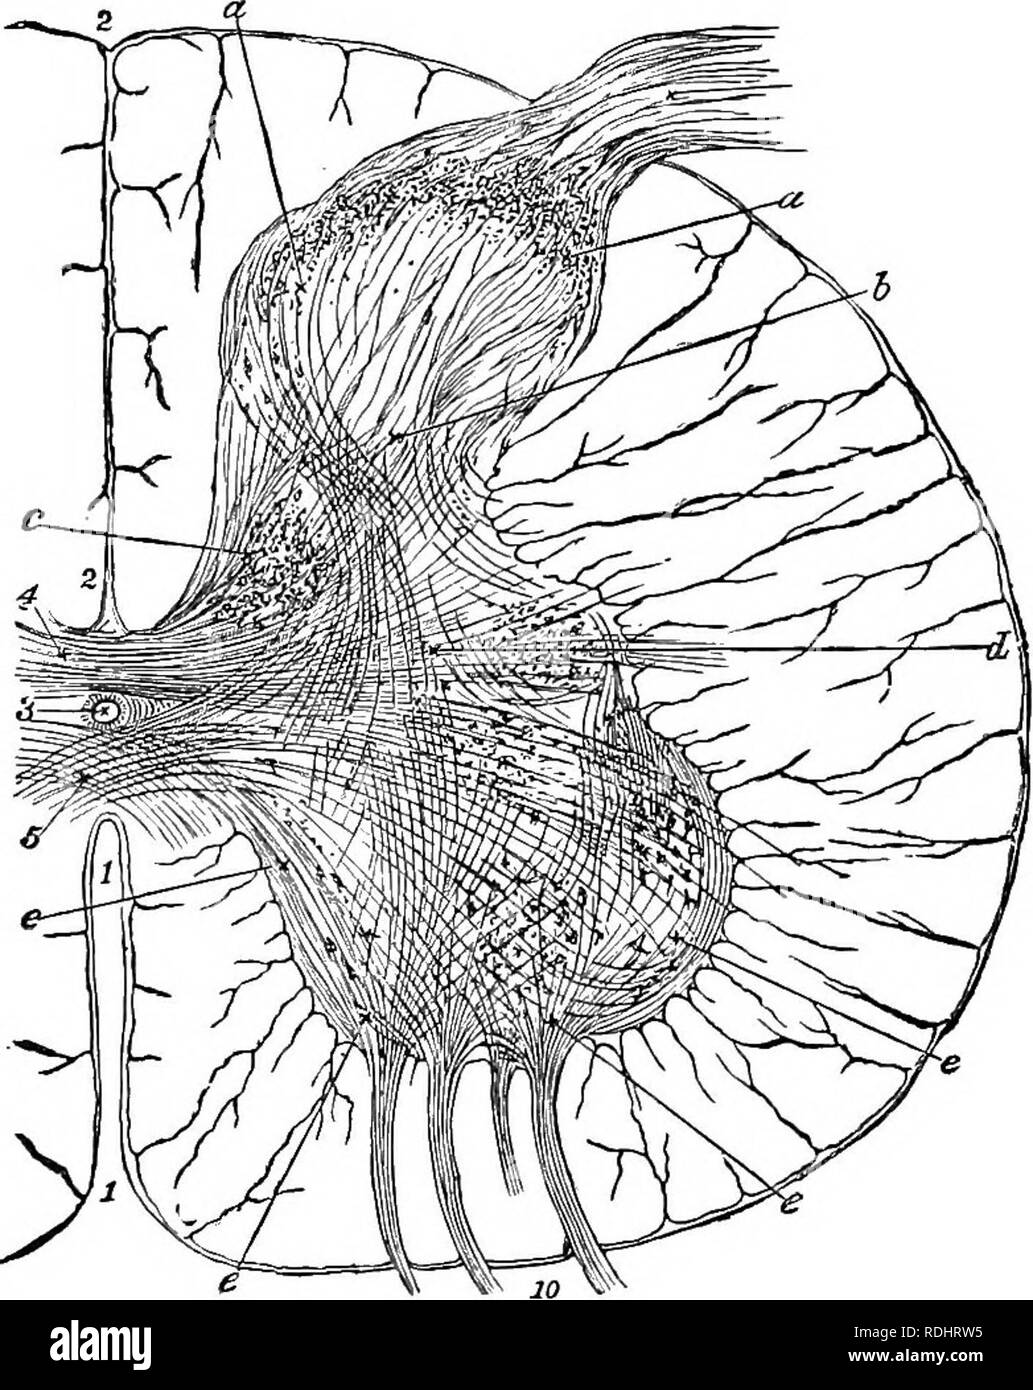 . Un libro di testo di Fisiologia Generale e anatomia. Fisiologia, comparativo, anatomia. La colonna vertebrale umana COBD 399 dorso-vcntrally, e ha un diametro medio di tre quarti di un pollice, con un lengt.h di circa diciassette pollici. È la più grande nella regione del collo dal terzo al primo vertebrse dorsale, e vi è una seconda espansione. Ptg. 187-sezione trasversale del midollo spinale; 1, fessura anteriore; 2, fessura posteriore, 3, canale centrale; 4, 5, commessure; 9, radice posteriore; 10, anteriore radice; una, e la materia grigia. Lo strato esterno è la pia mater, coprendo la materia bianca e inviare - ing in esso bloo Foto Stock